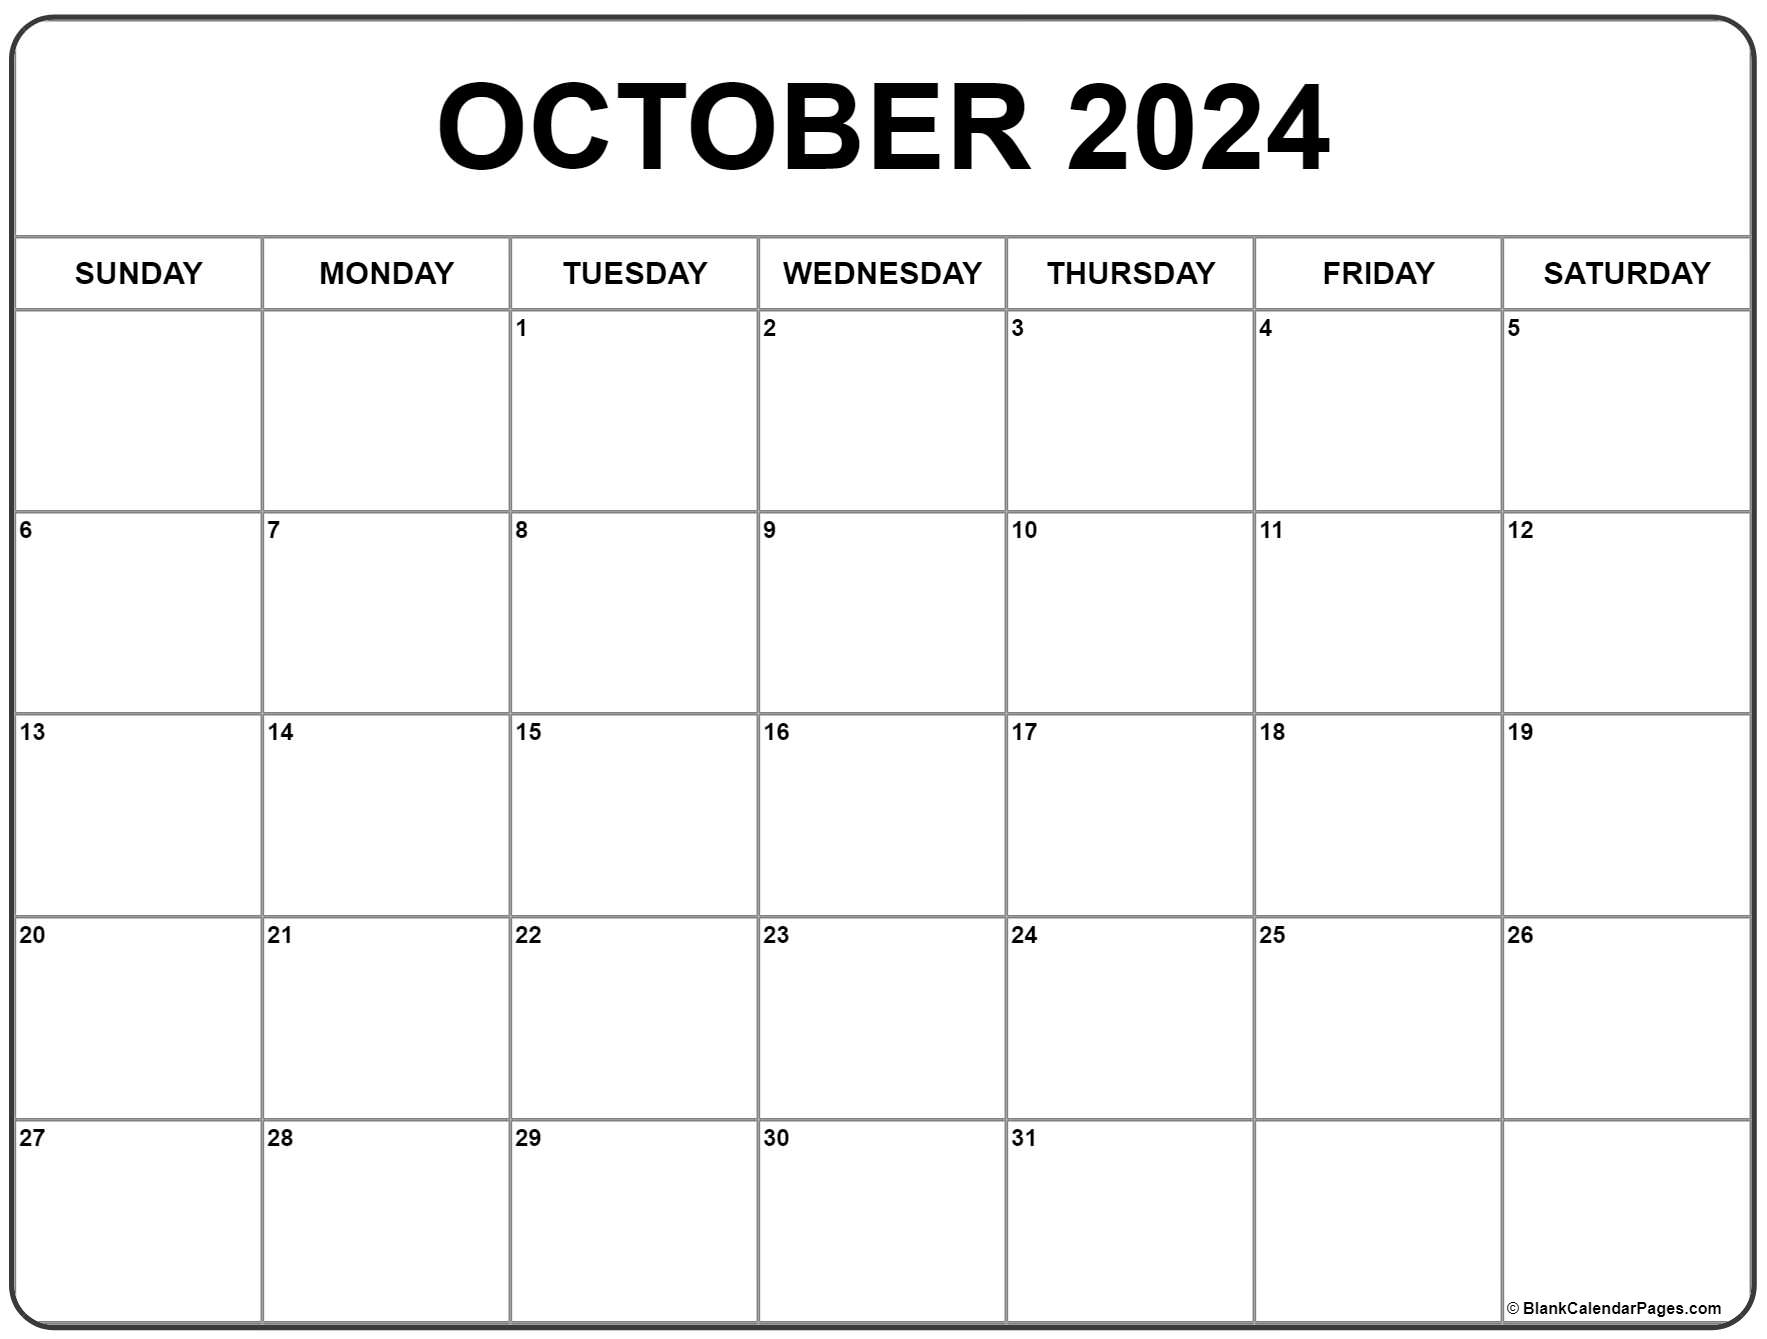 October 2024 Calendar | Free Printable Calendar within Free Printable Blank Calendar October 2024